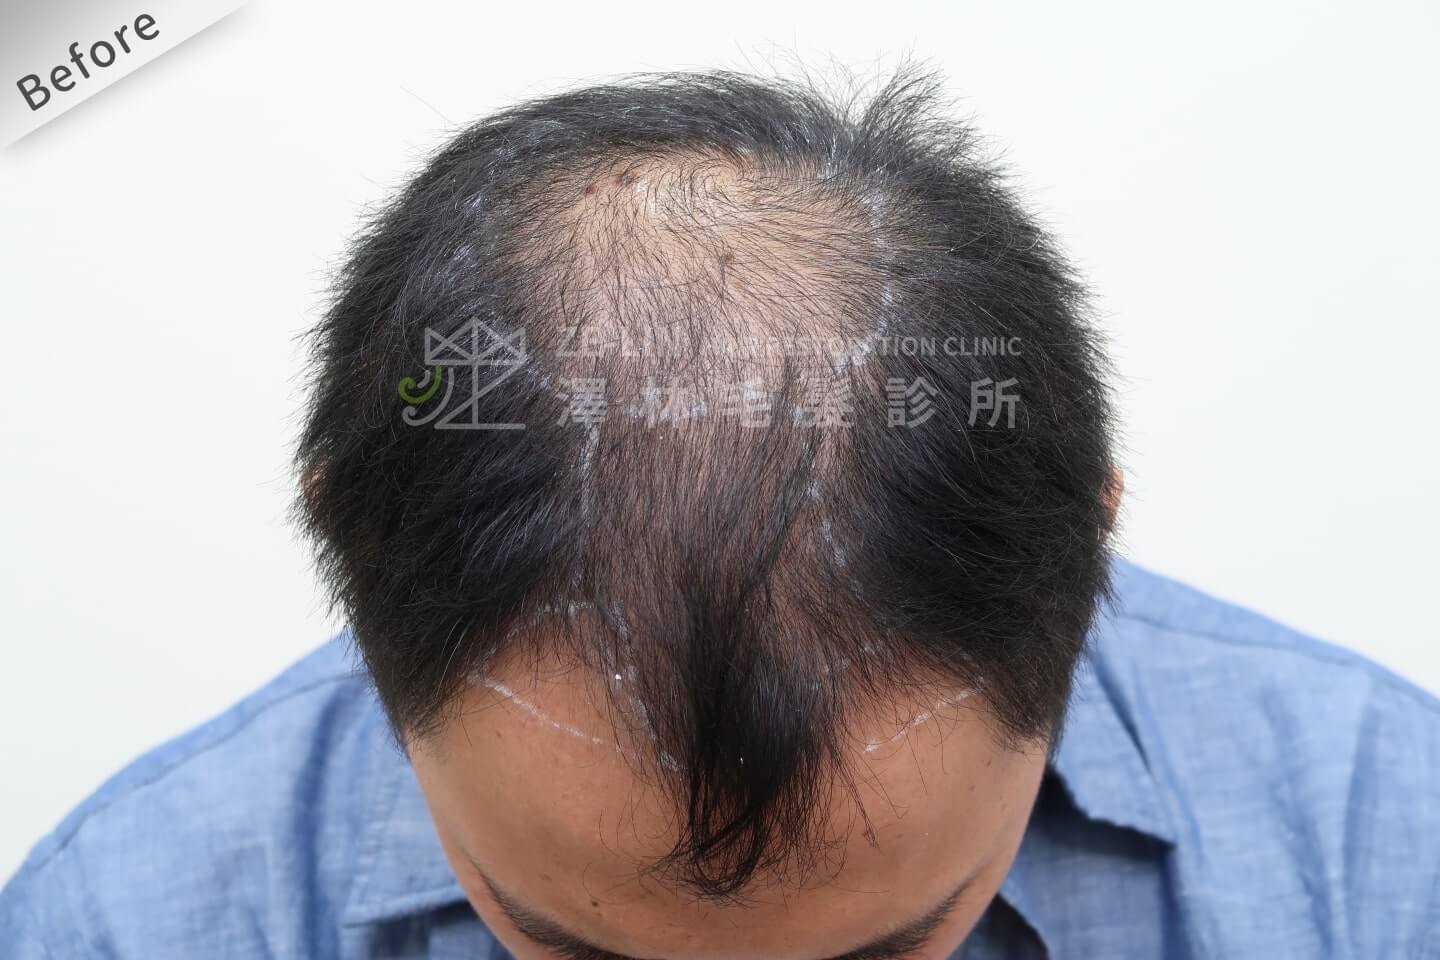 第五期雄性禿可採取禿頭植髮手術獲得改善